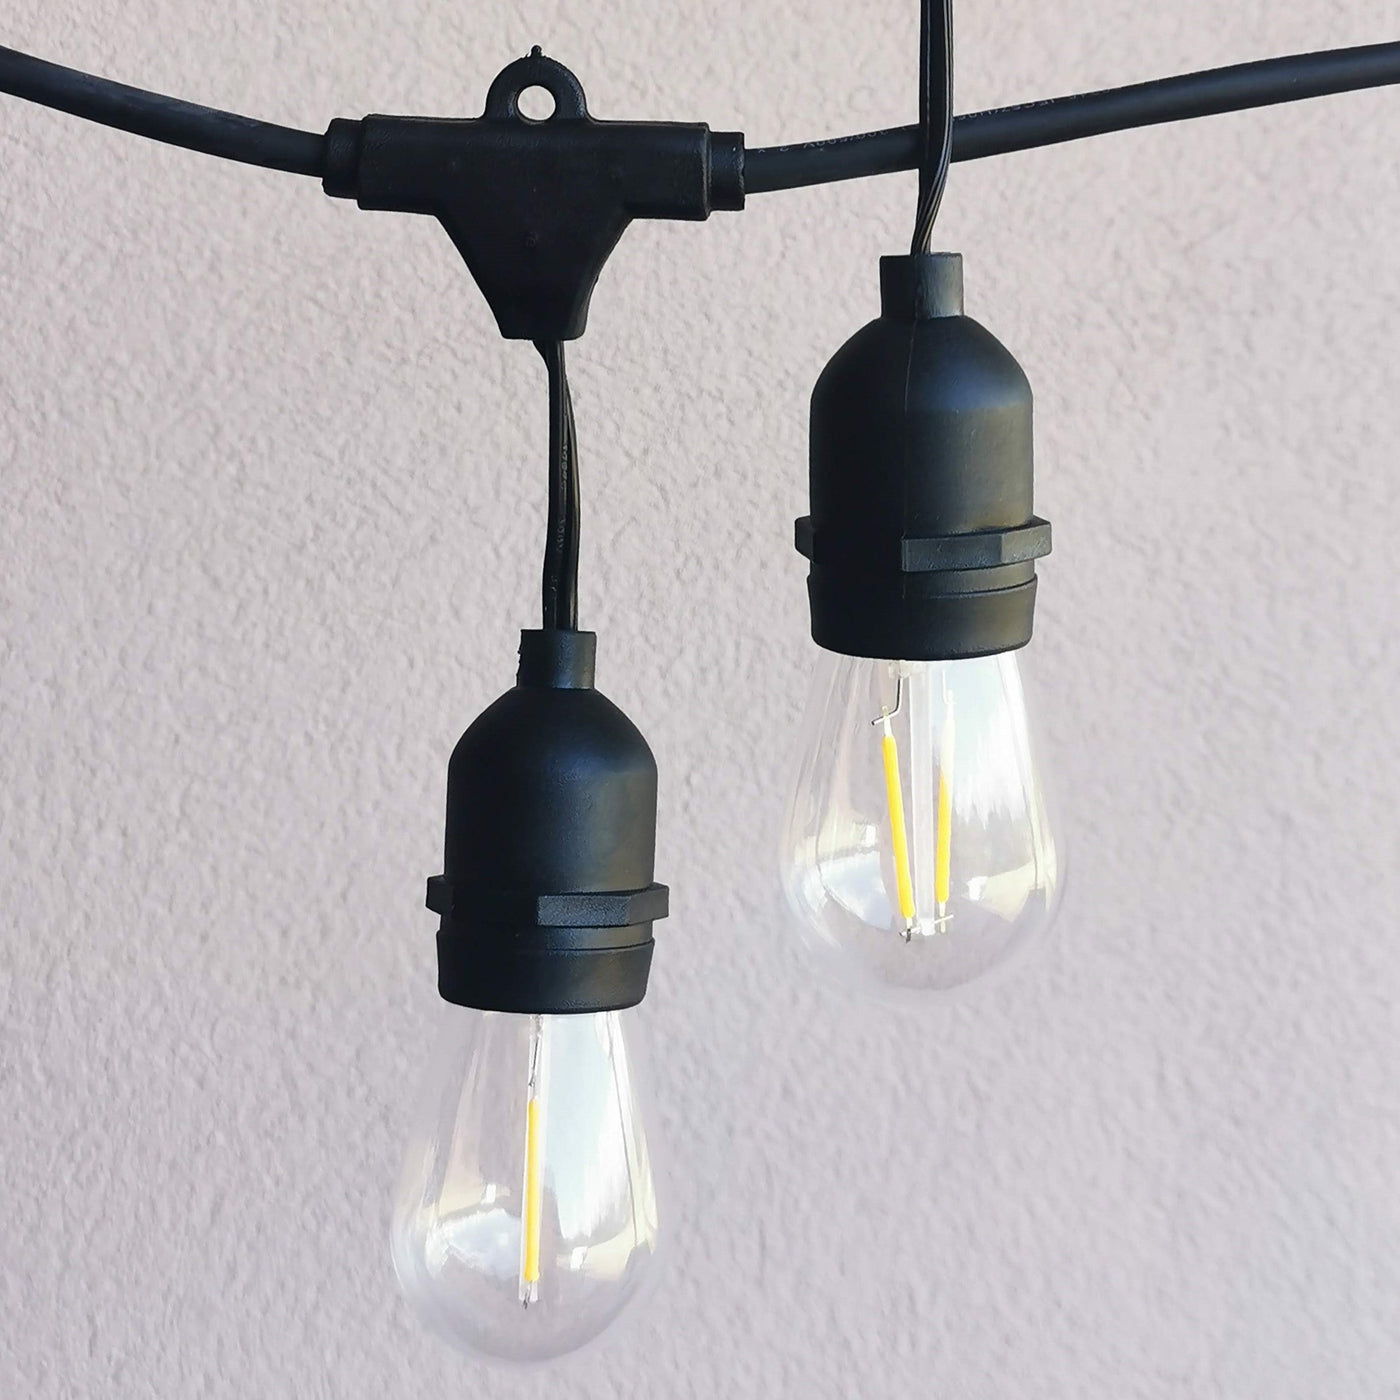 Drop Hang | 15m 15 Bulbs | S14 2w | Dimmable Festoon Lights